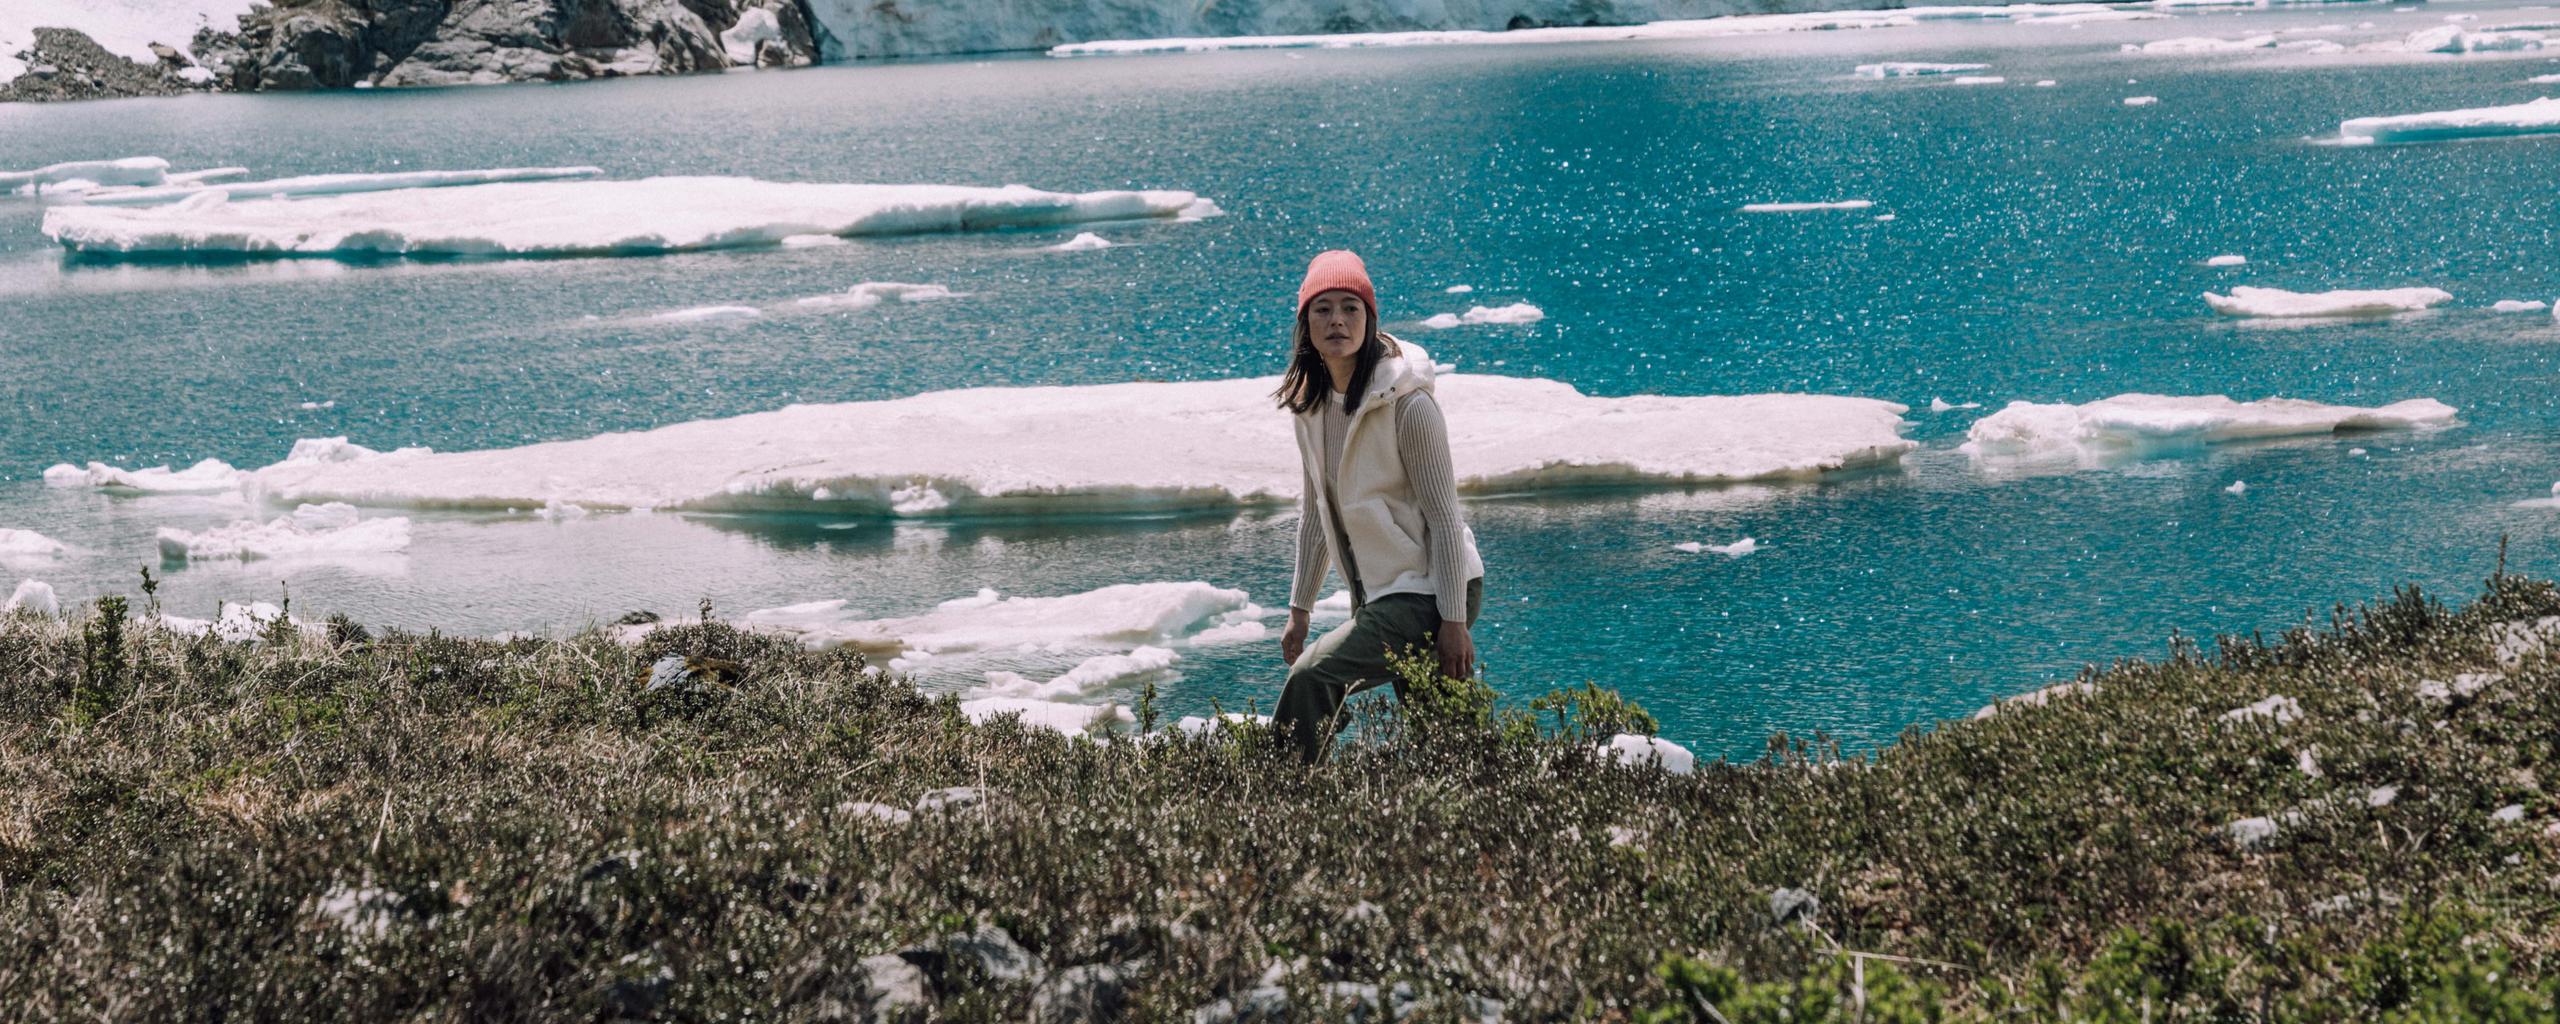 Woman walking along icy lake in Patagonia